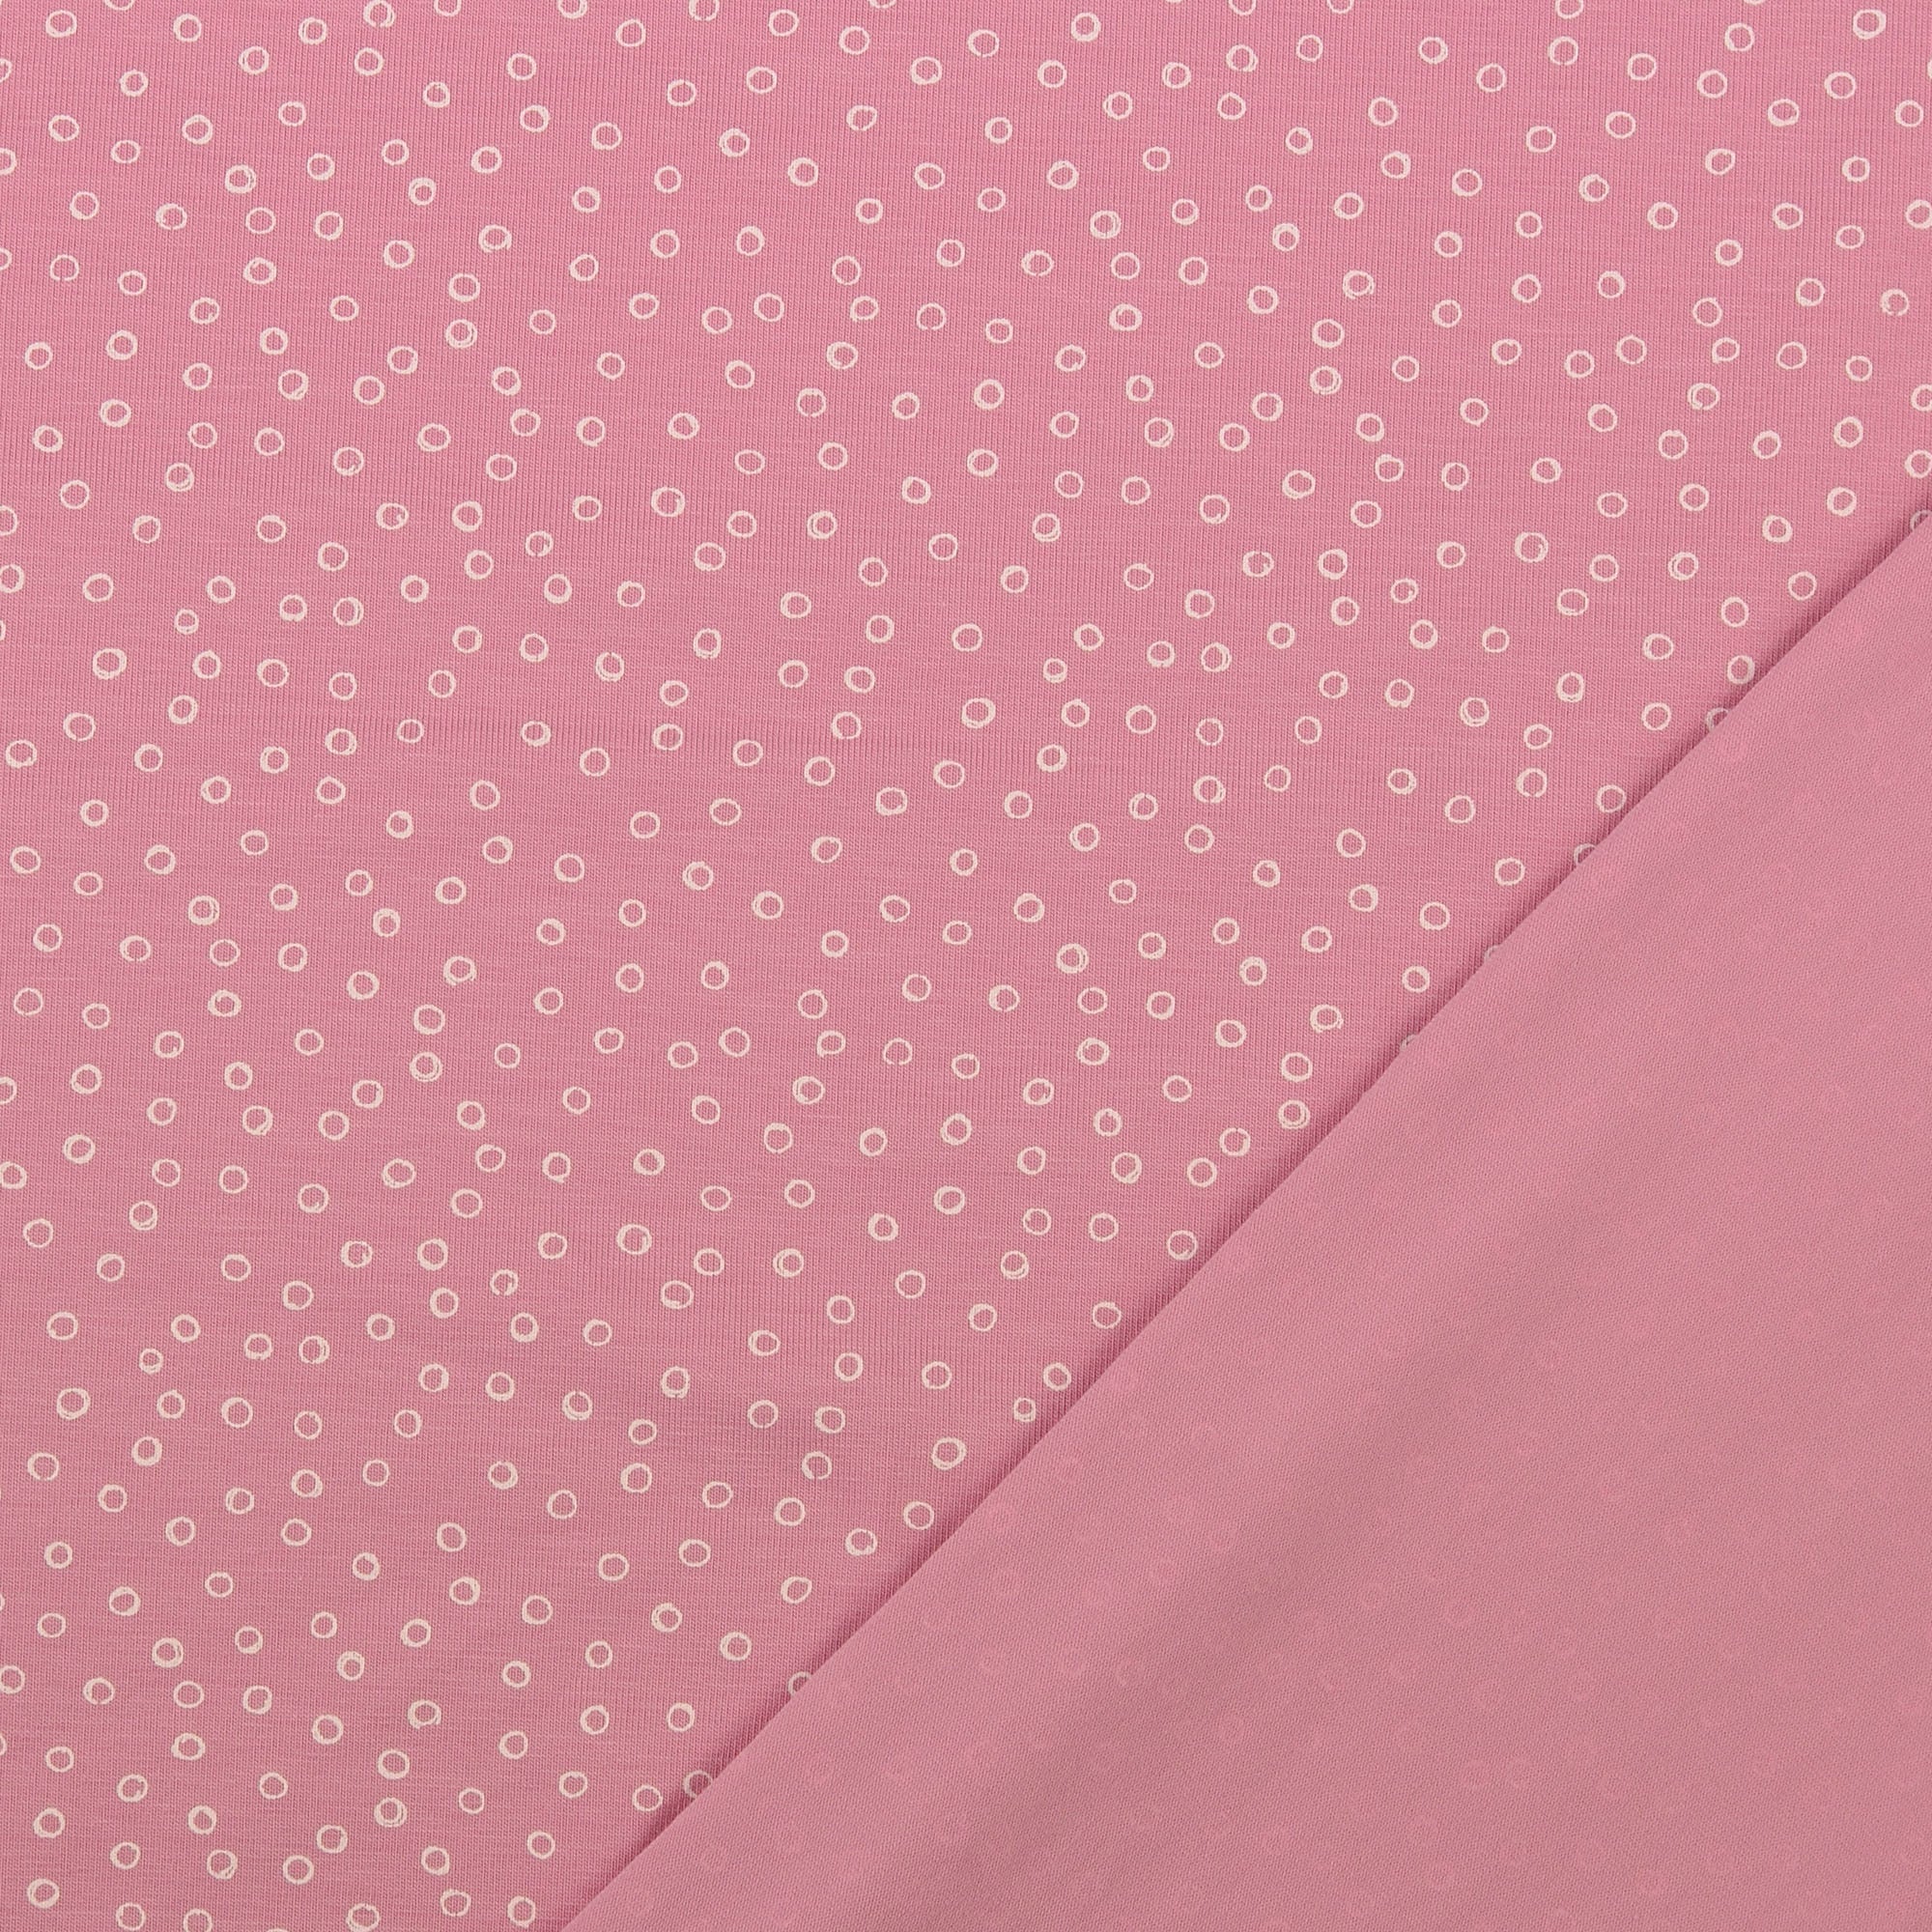 Doodle Circles Pink Cotton Jersey Fabric